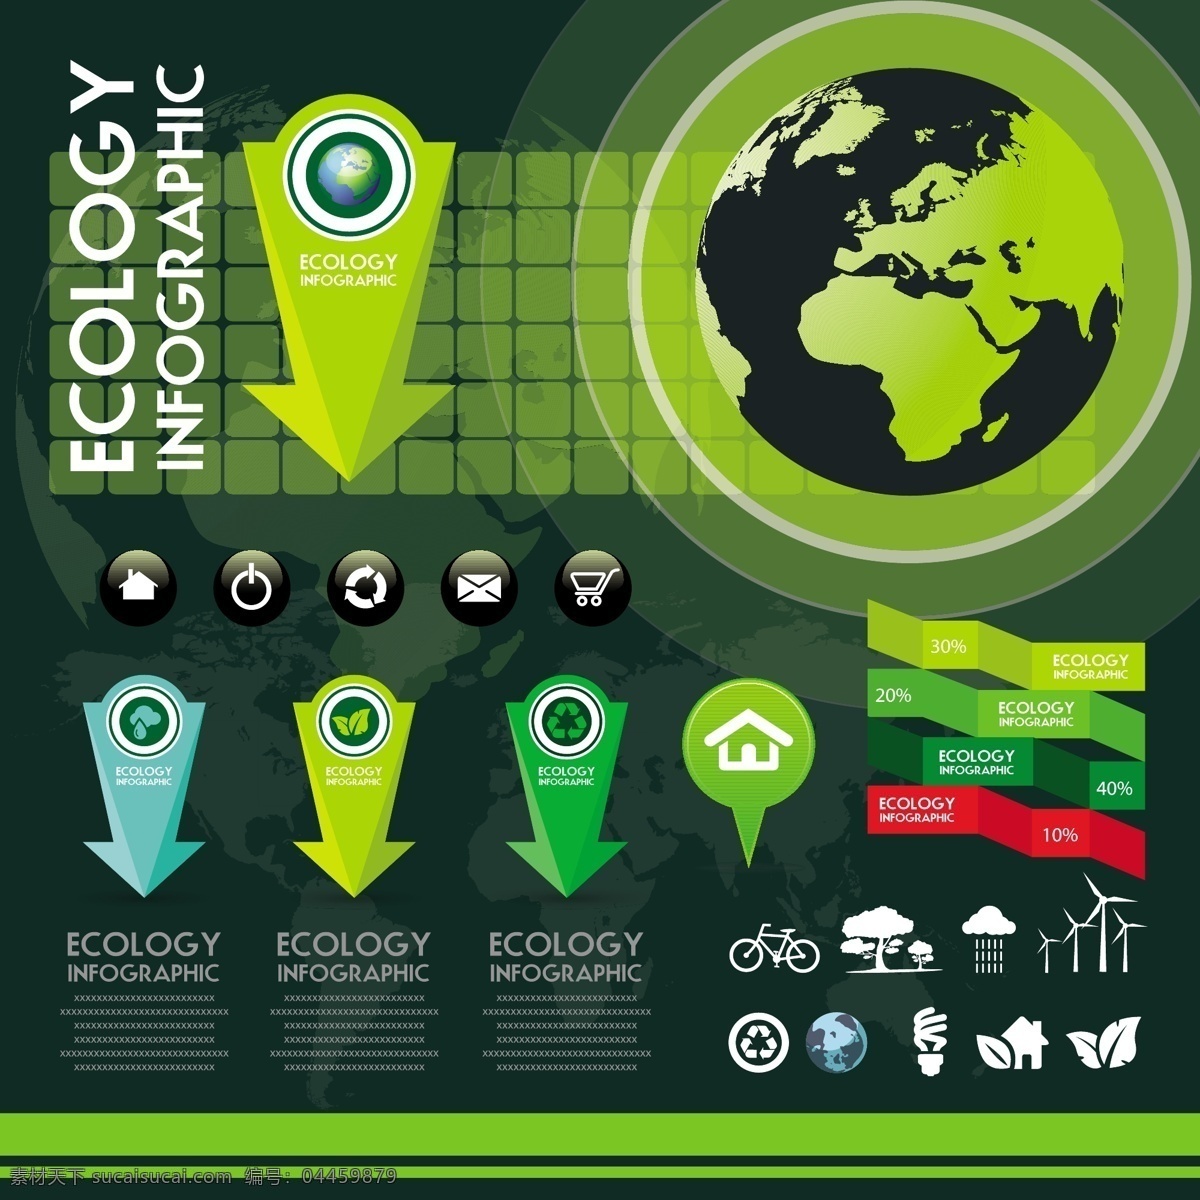 生态信息图表 环保 创意设计 eco 绿色 箭头 地球 循环 能源 节能 低碳 生态 回收 环保标志 ppt素材 底纹背景 商务金融 商业插画 黑色